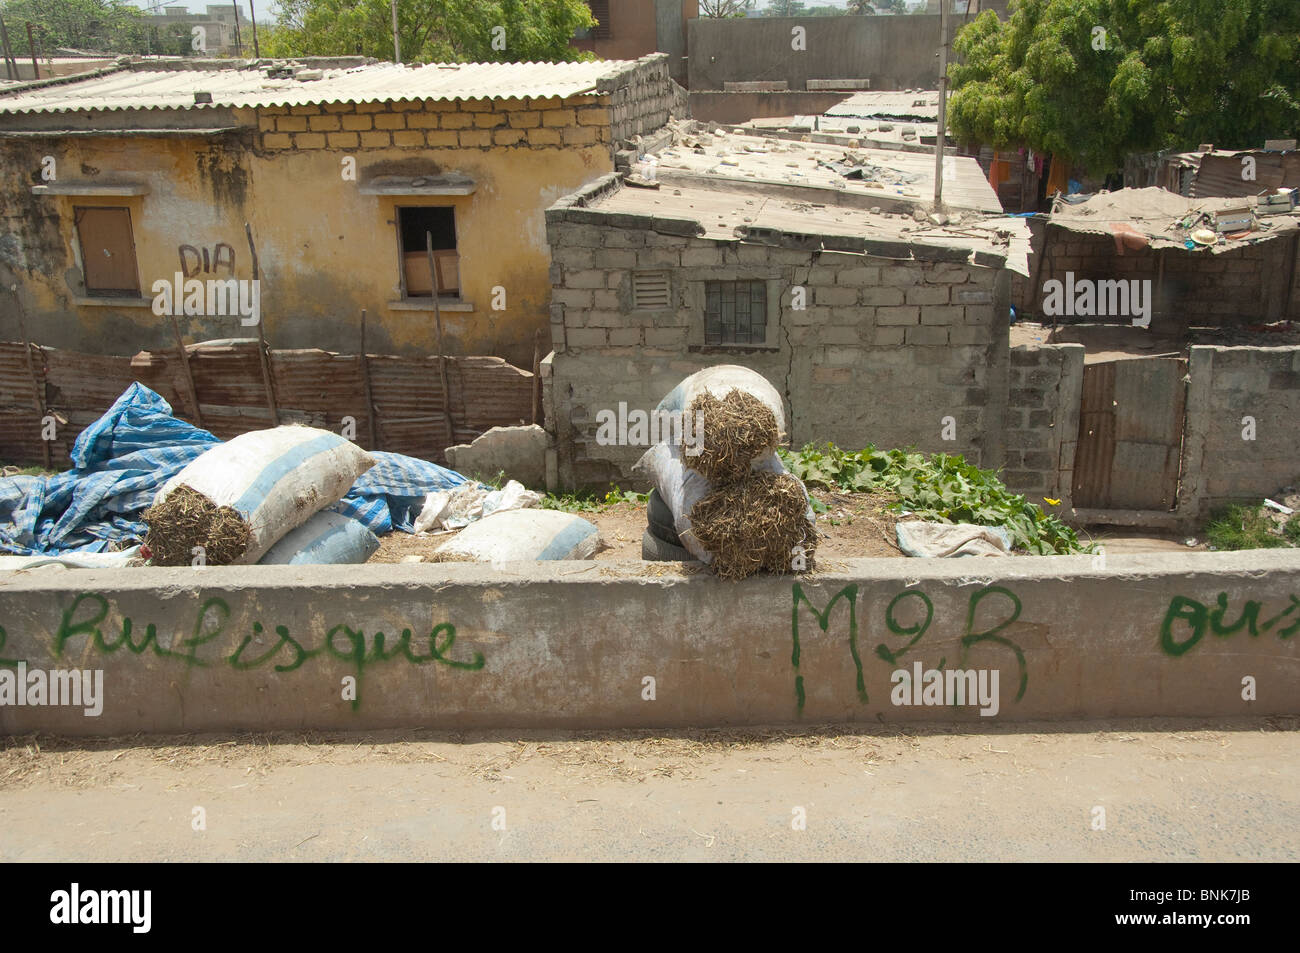 Afrique, Sénégal, Dakar. La ville de Dakar. Foin du bétail vendu en sacs sur le côté de la rue dans quartier typique. Banque D'Images